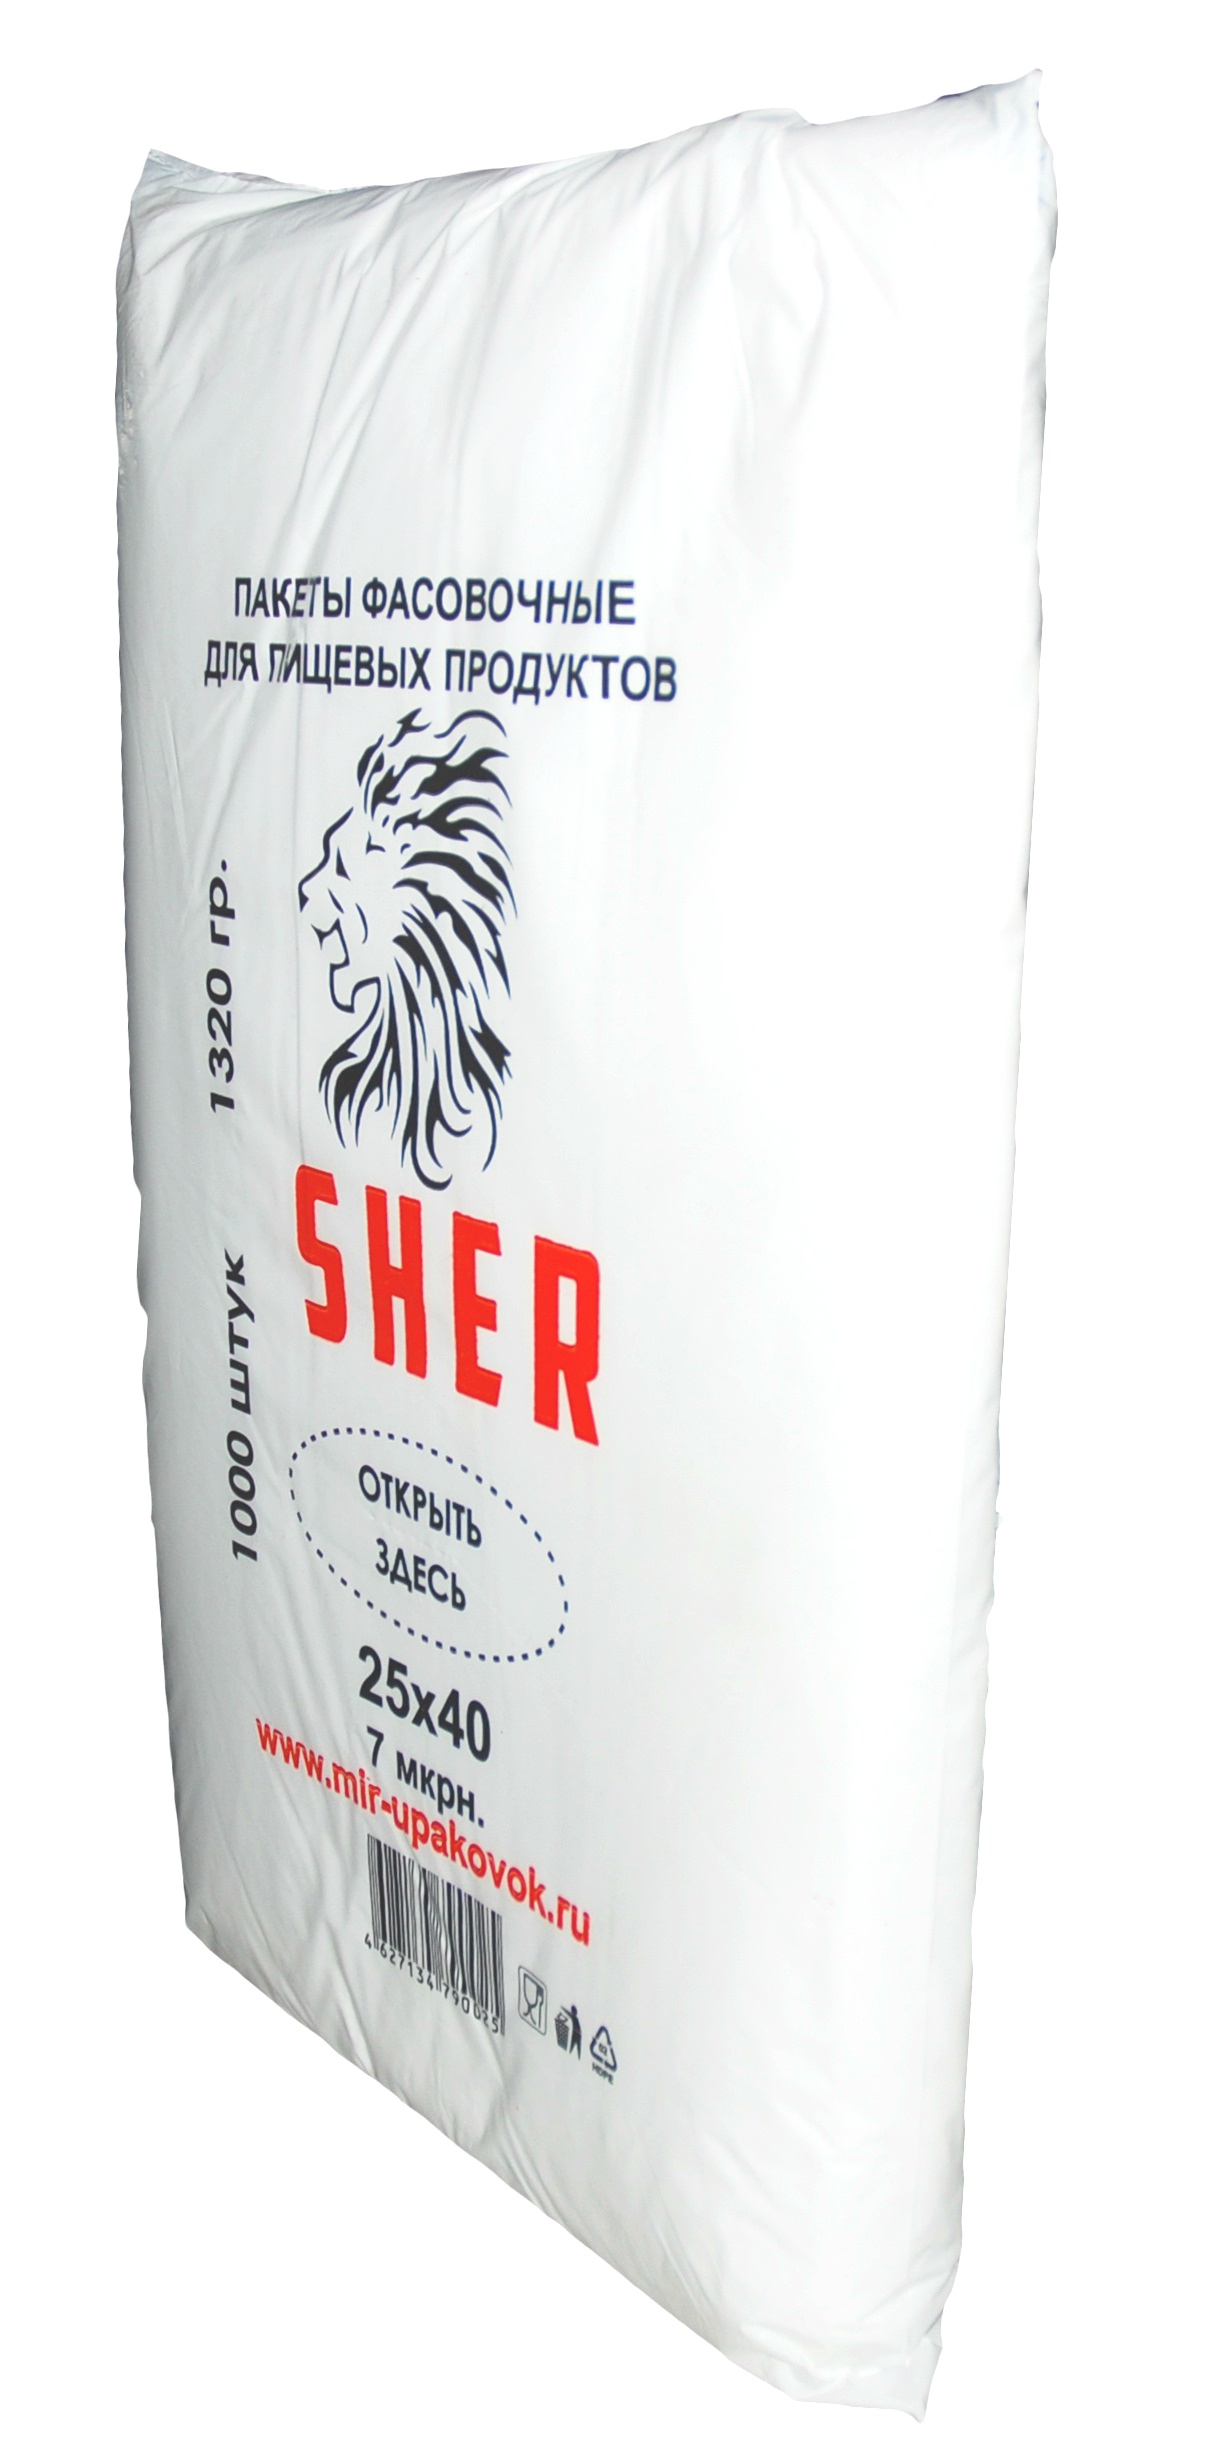 фото Упаковка SHER Пакеты фасовочные для пищевых продуктов "SHER" 25х40 1000 шт, прозрачный